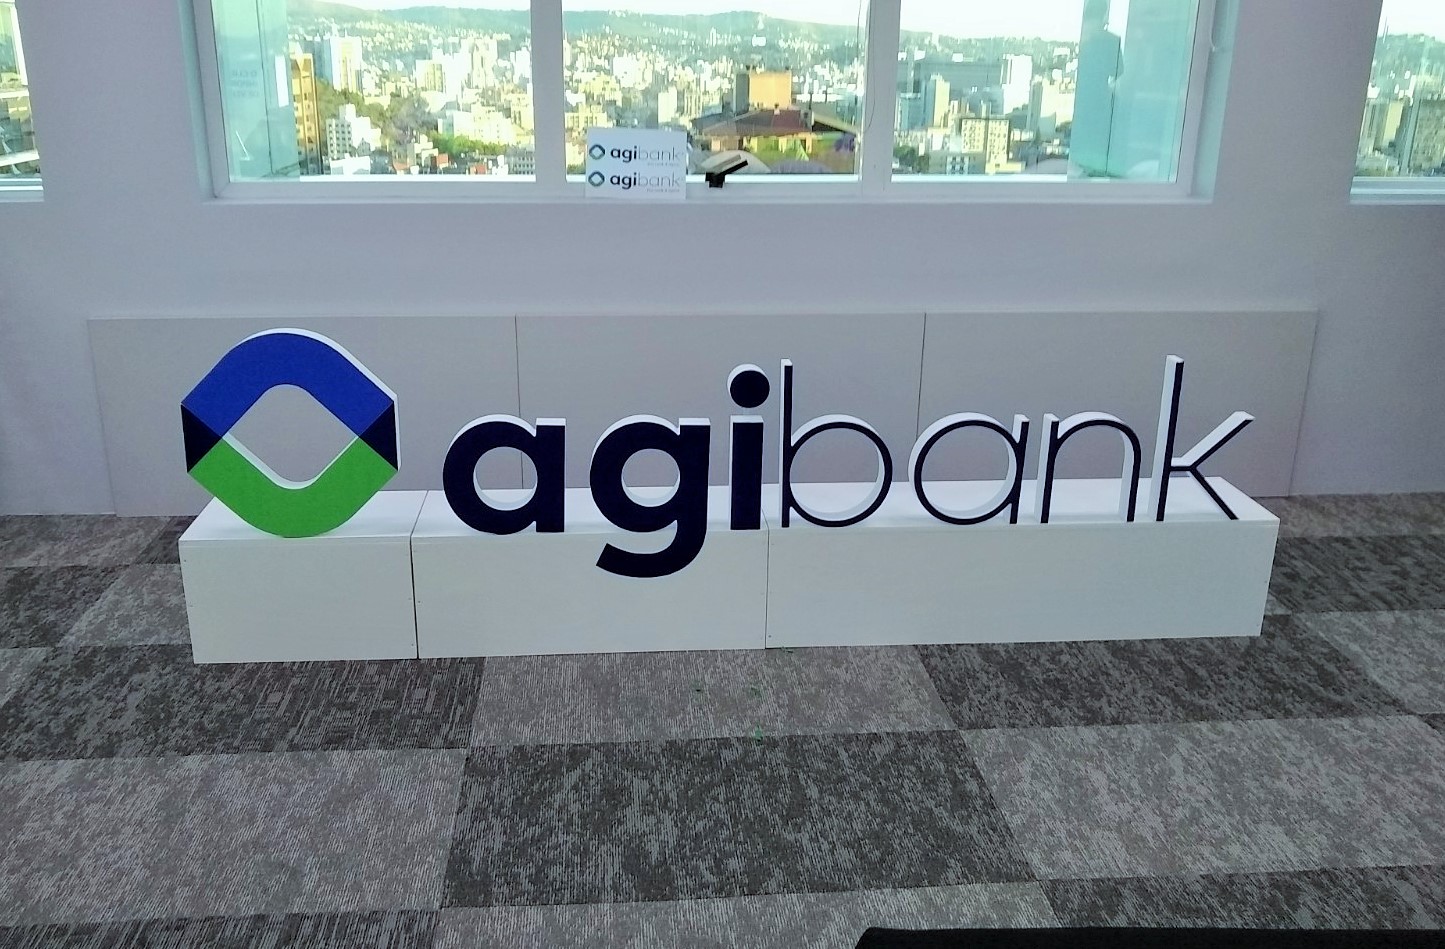 Conheça o Empréstimo pessoal Agibank Imagem: momento info